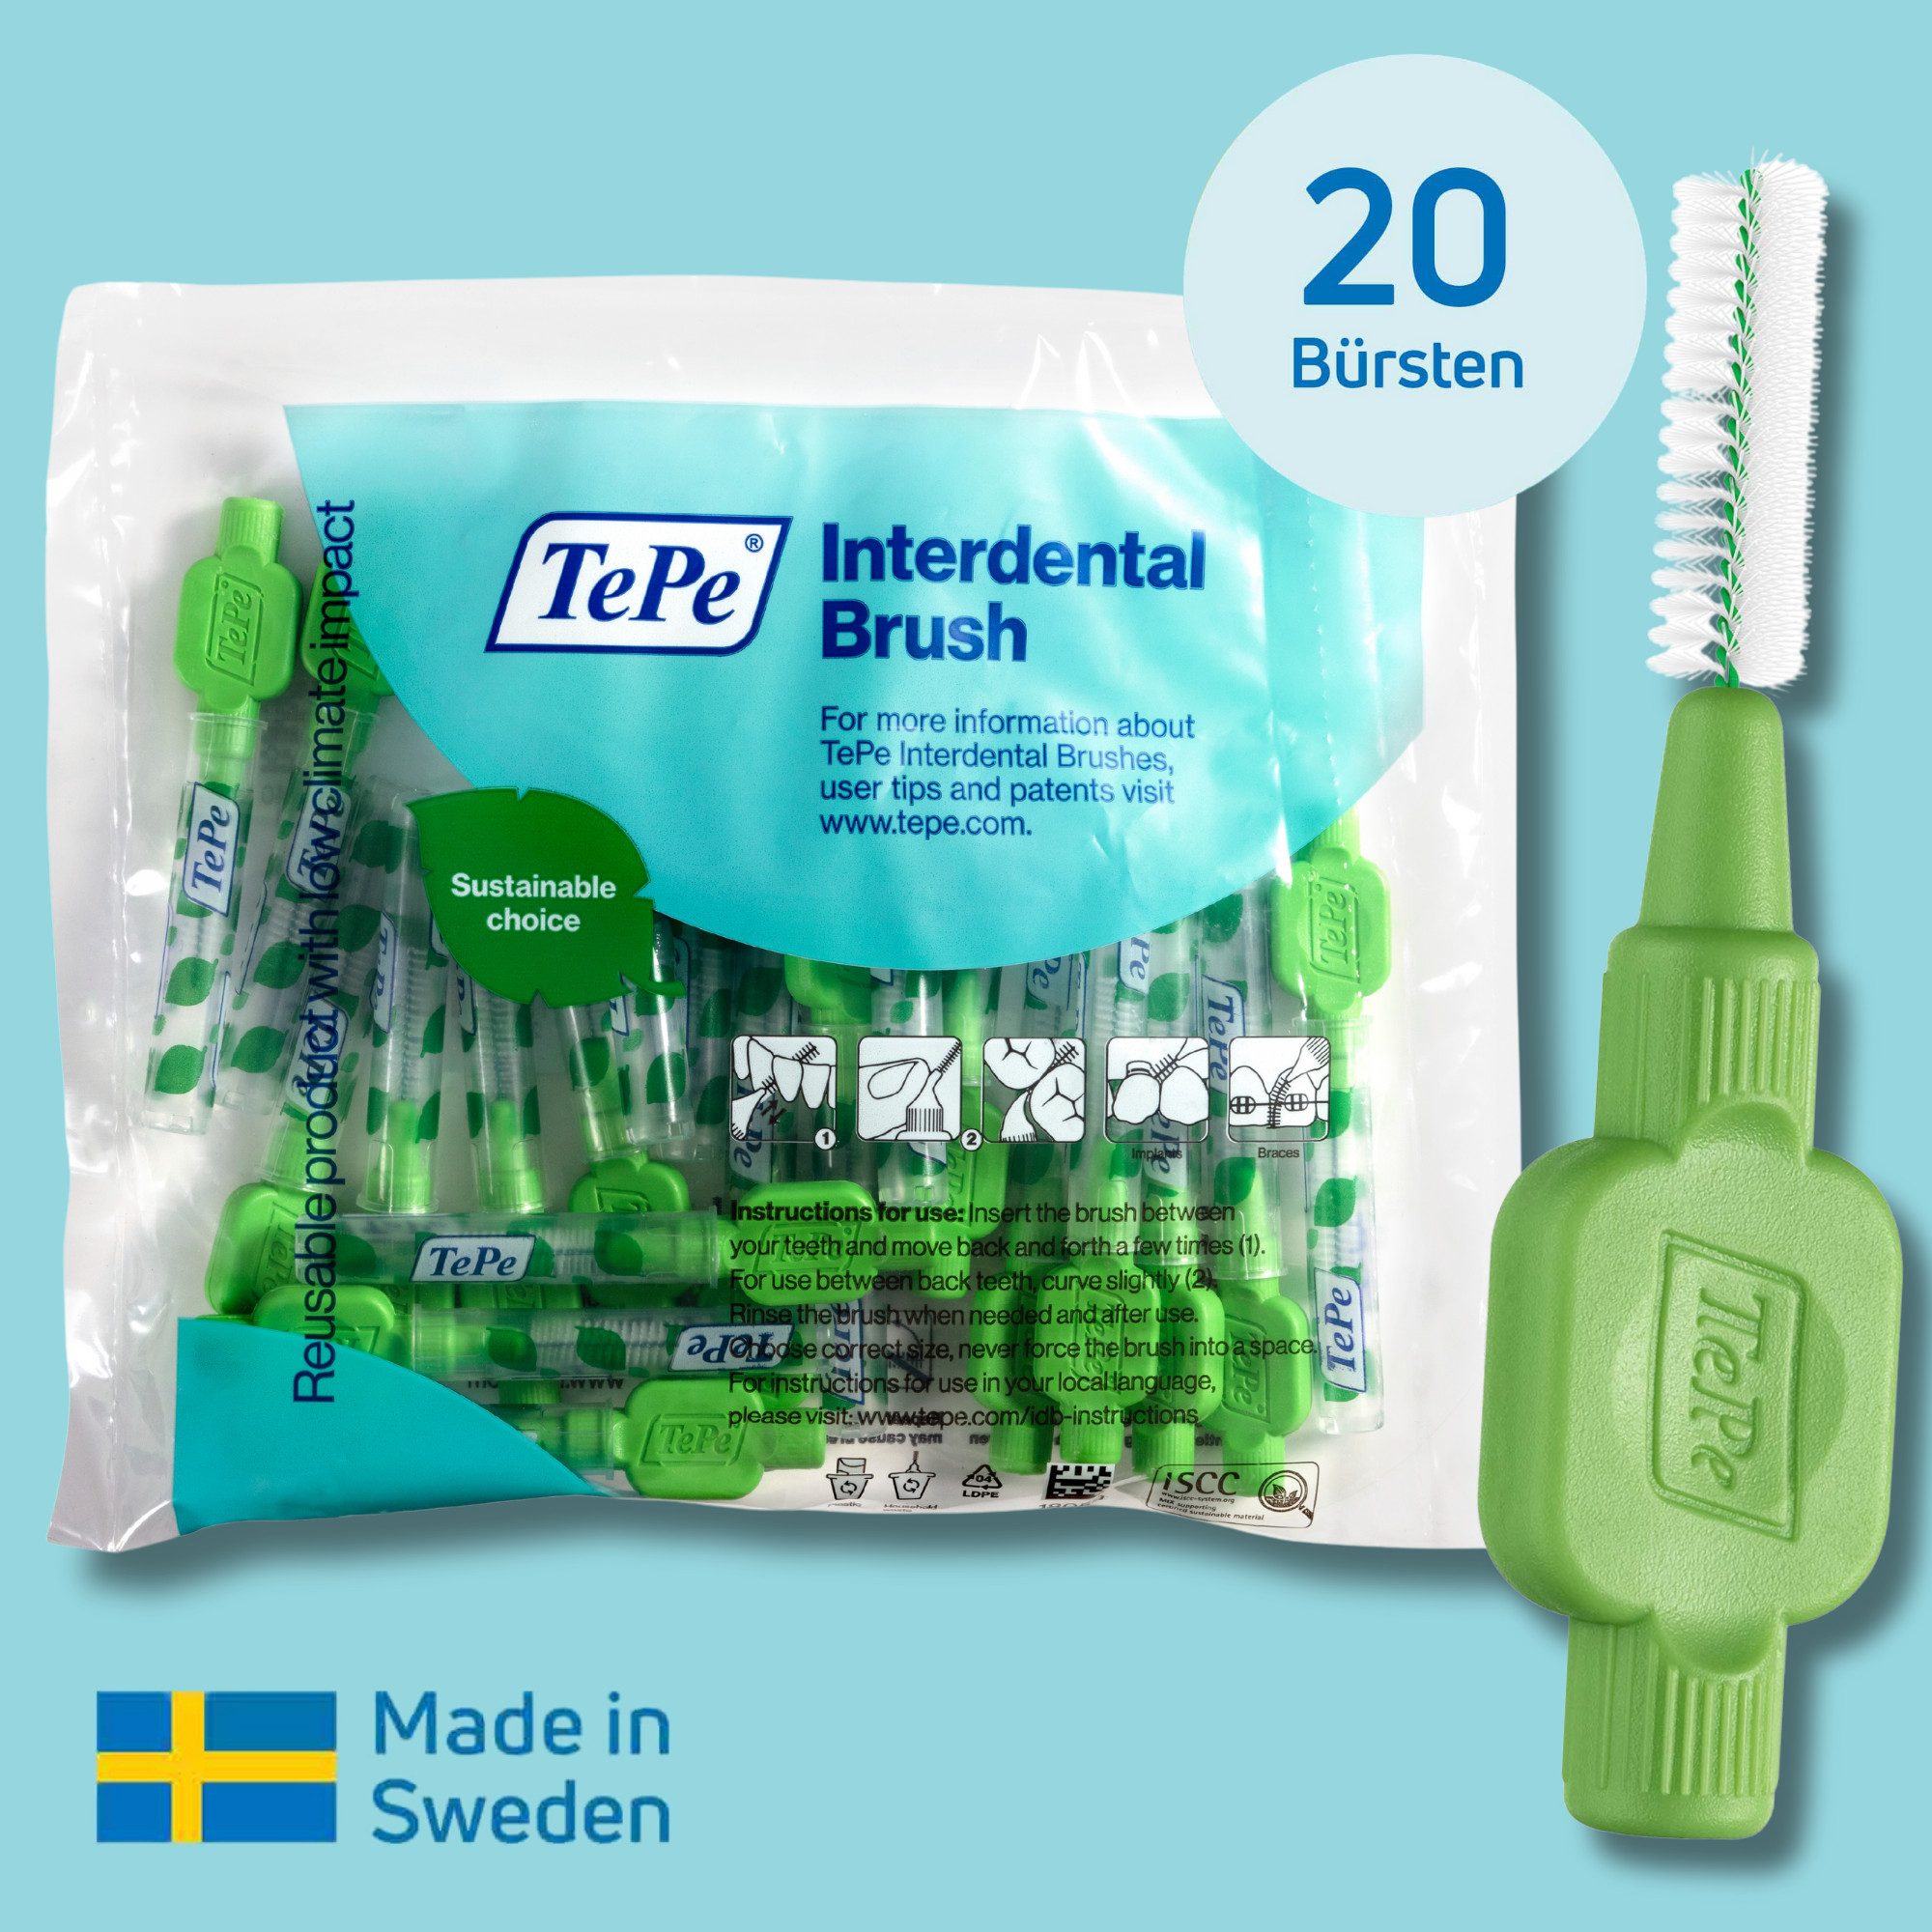 TePe Interdentalbürsten Original Zahnreinigungsstäbchen aus Schweden, Effiziente Zahnpflege, ISO-Größe 5, 20 Stk.